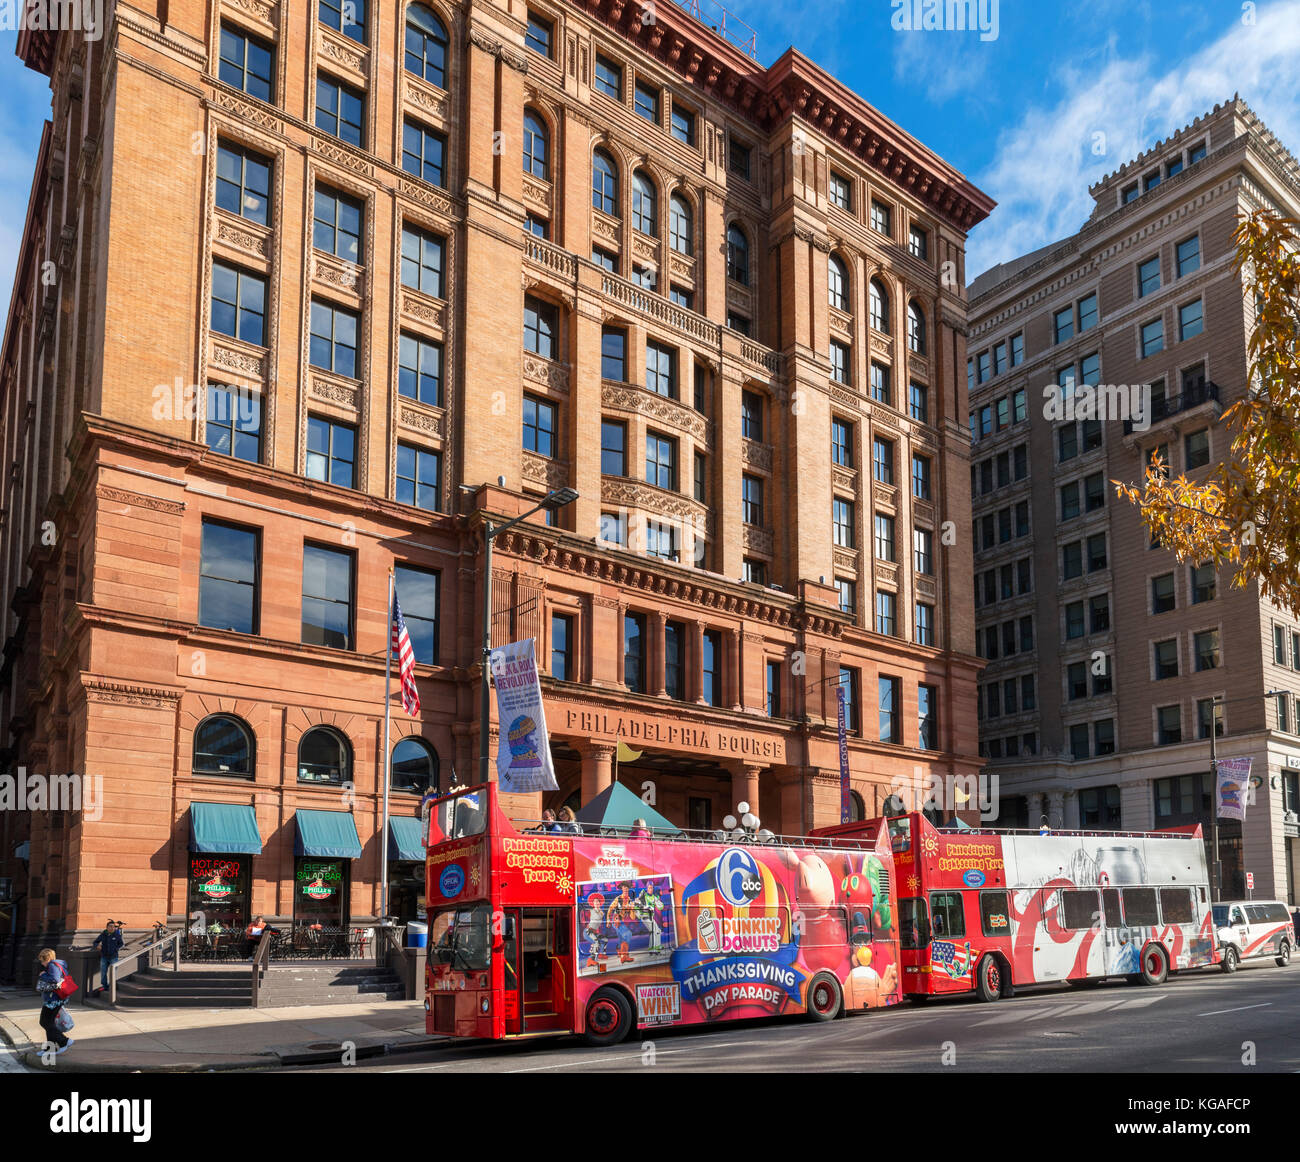 Sightseeing tour buses parked outside the Philadelphia Bourse building, Philadelphia, Pennsylvania, USA Stock Photo